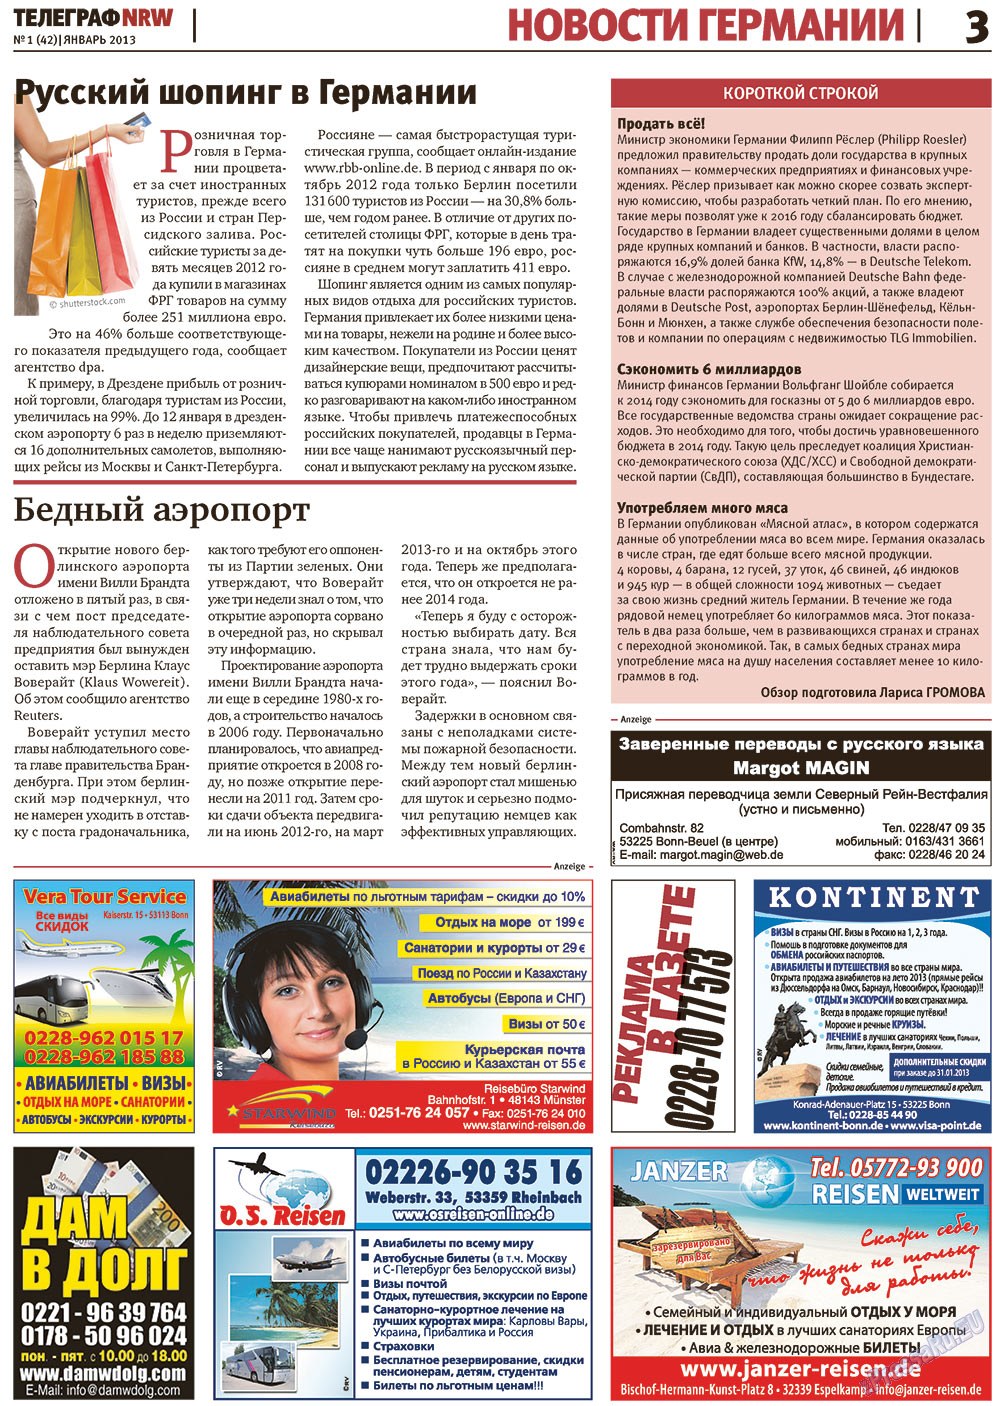 Телеграф NRW (газета). 2013 год, номер 1, стр. 3